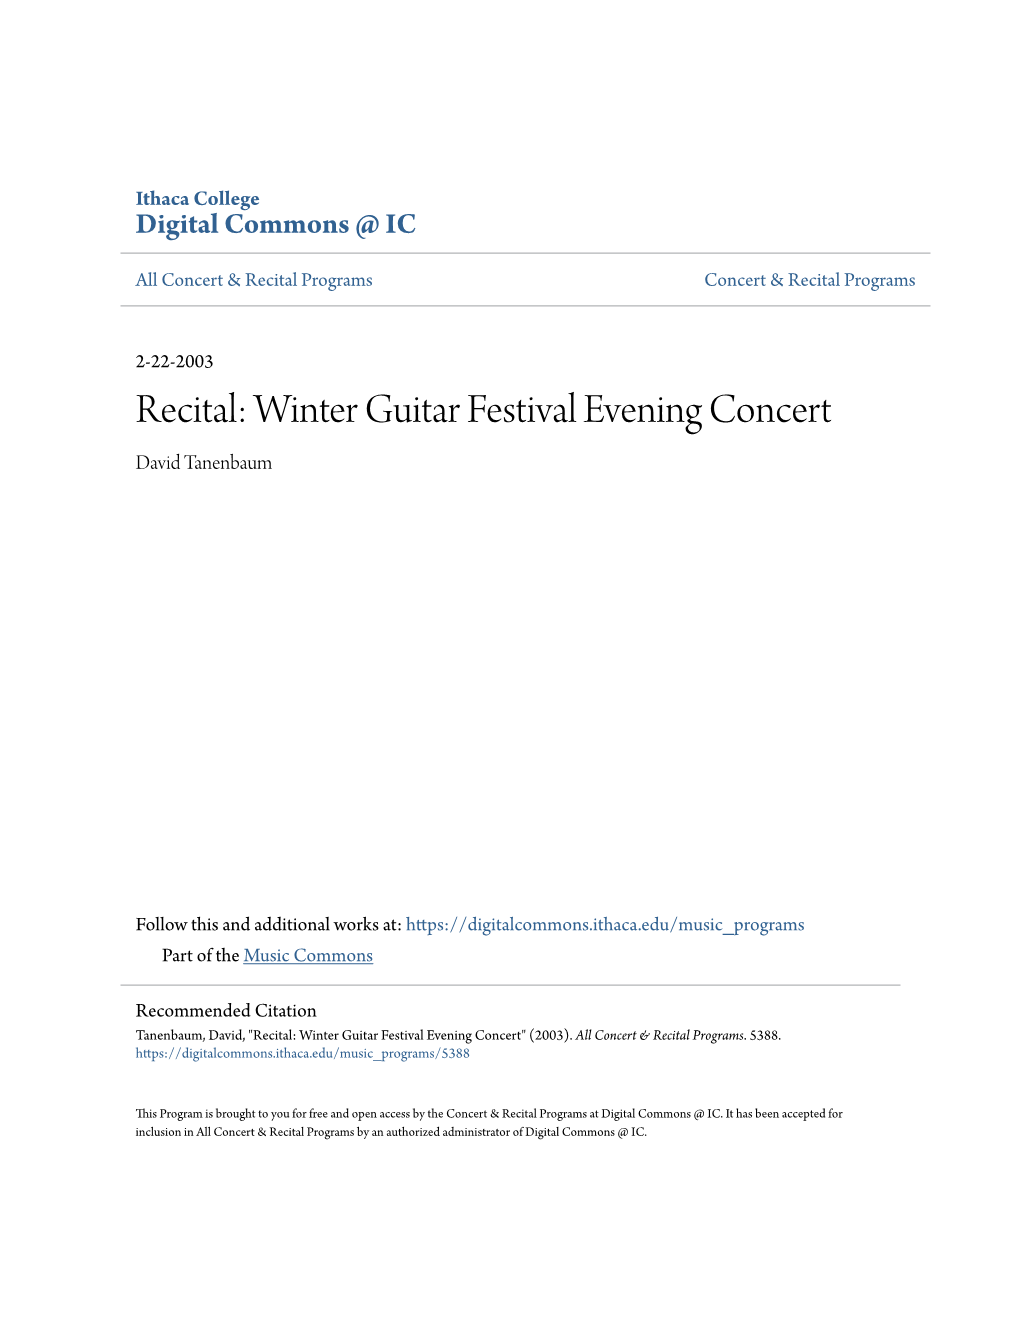 Winter Guitar Festival Evening Concert David Tanenbaum